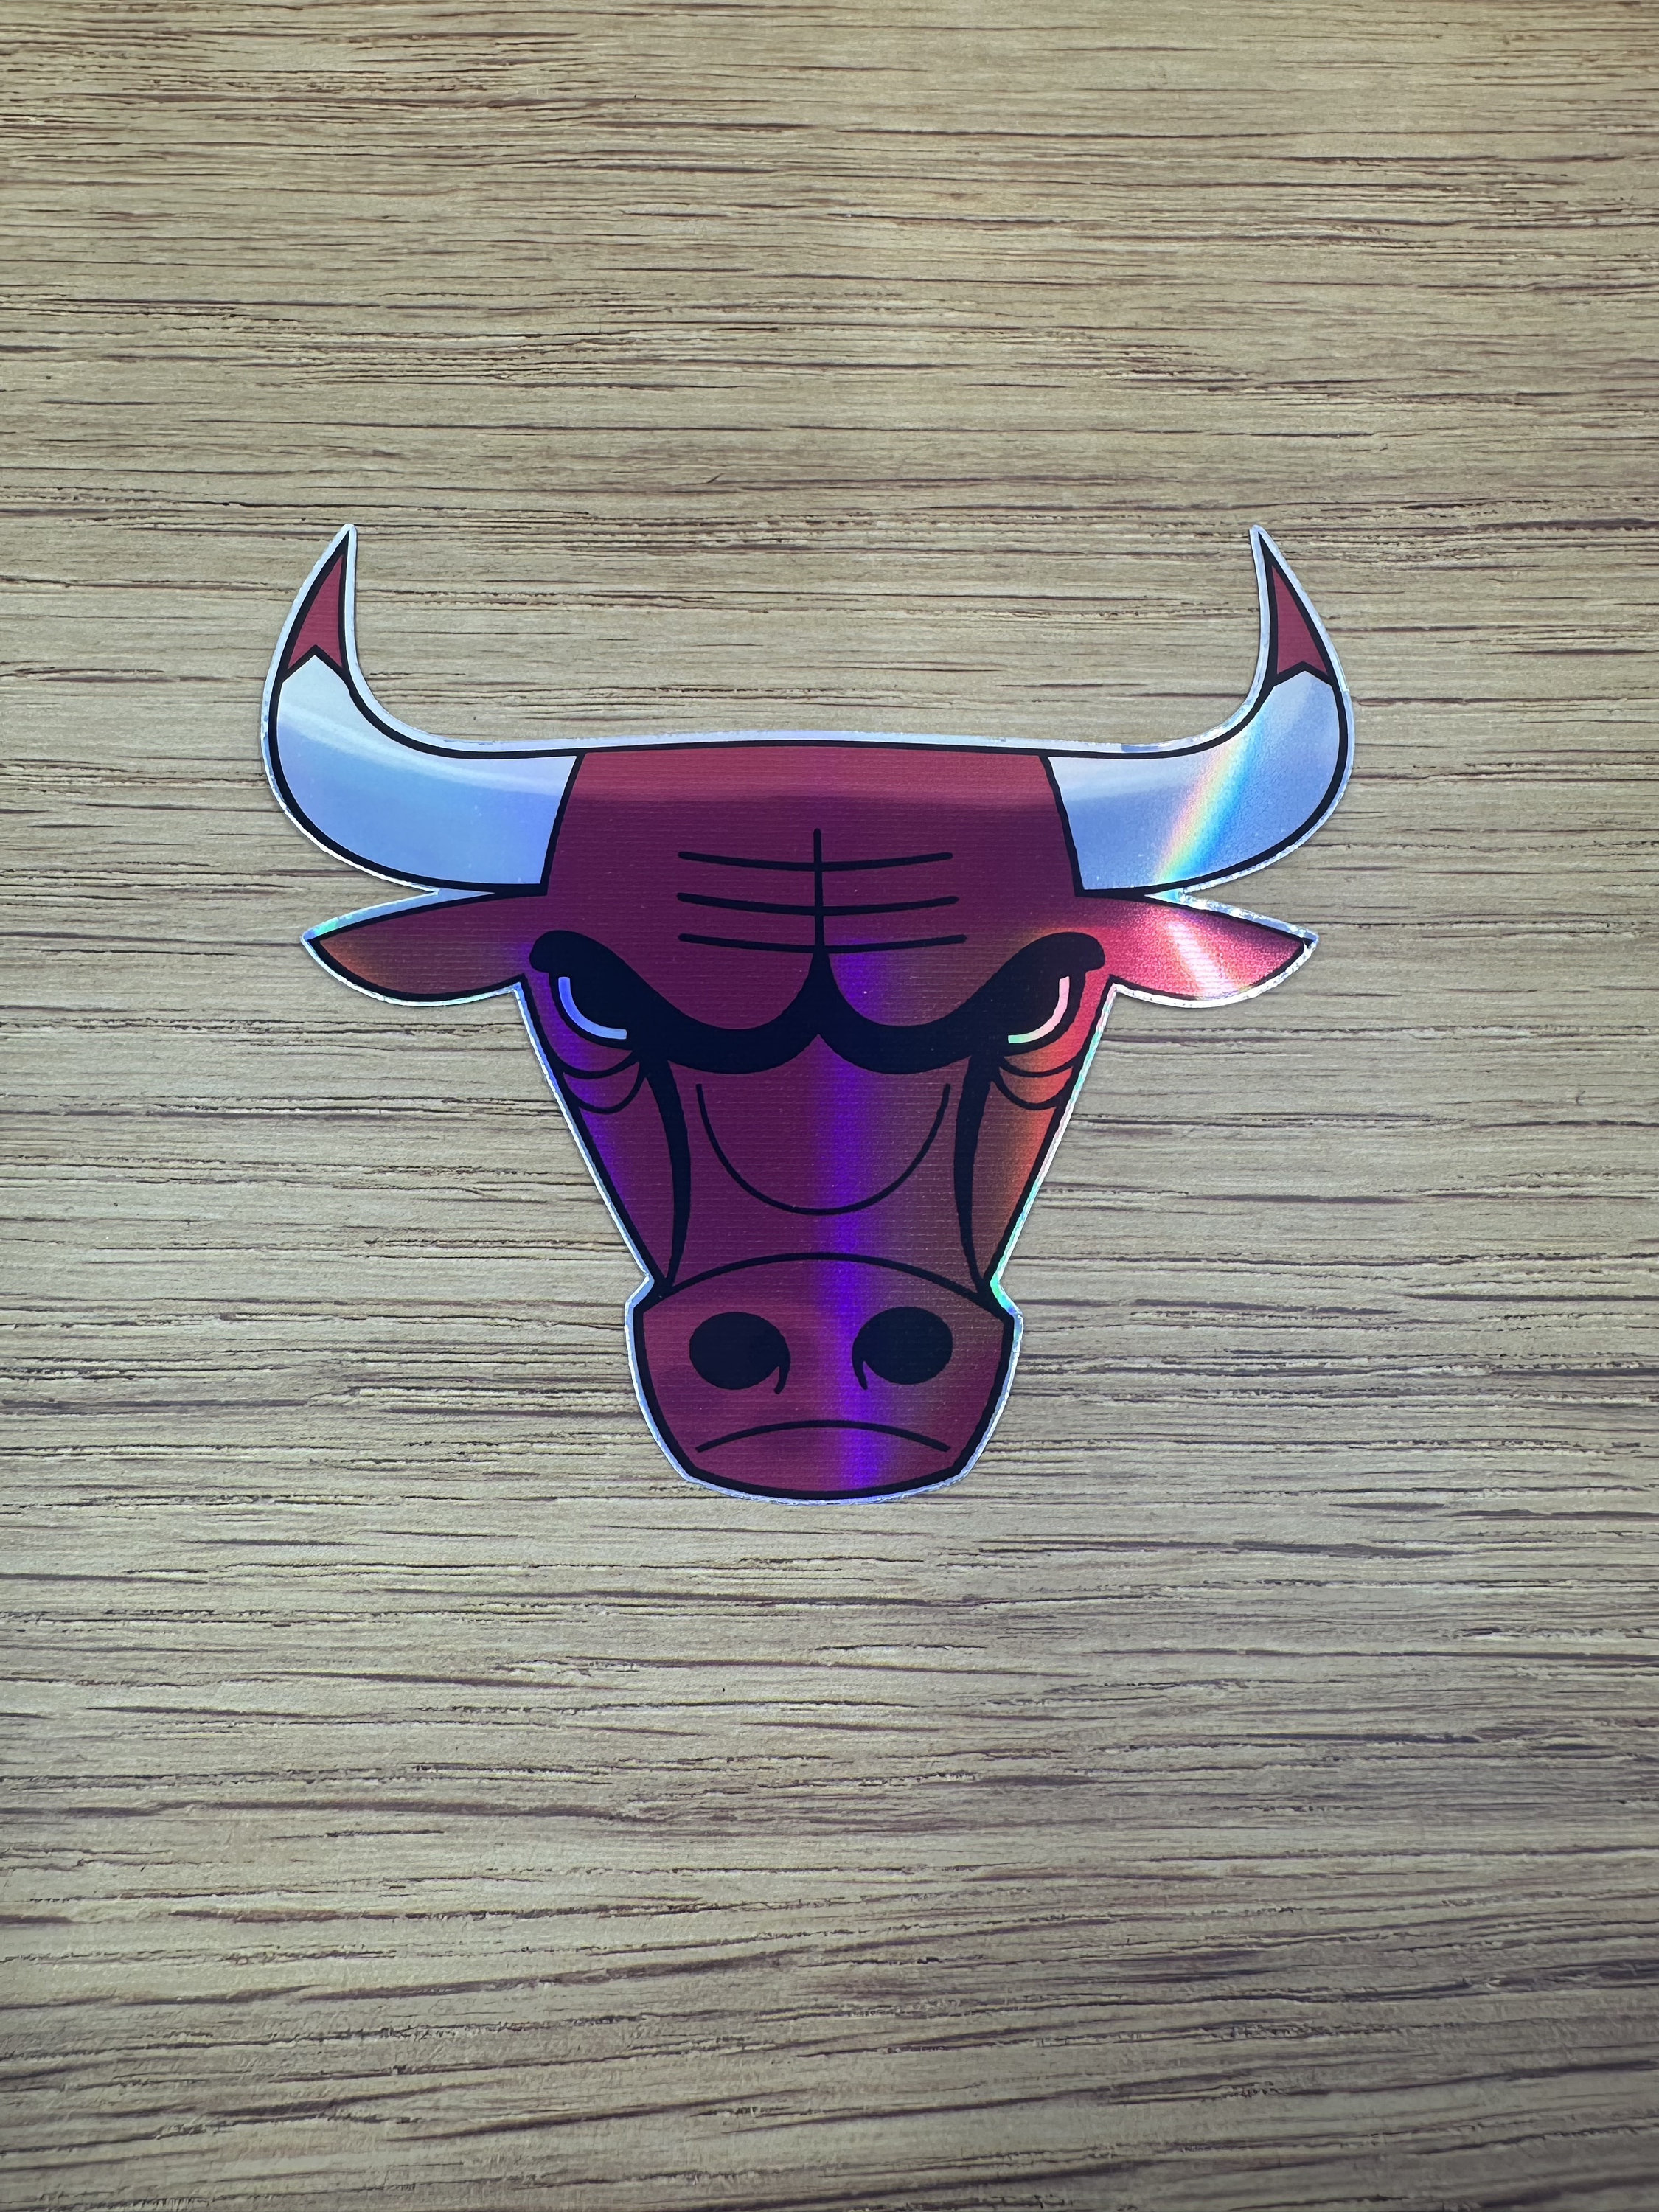 Chicago Bulls Round Decal / Sticker Die cut